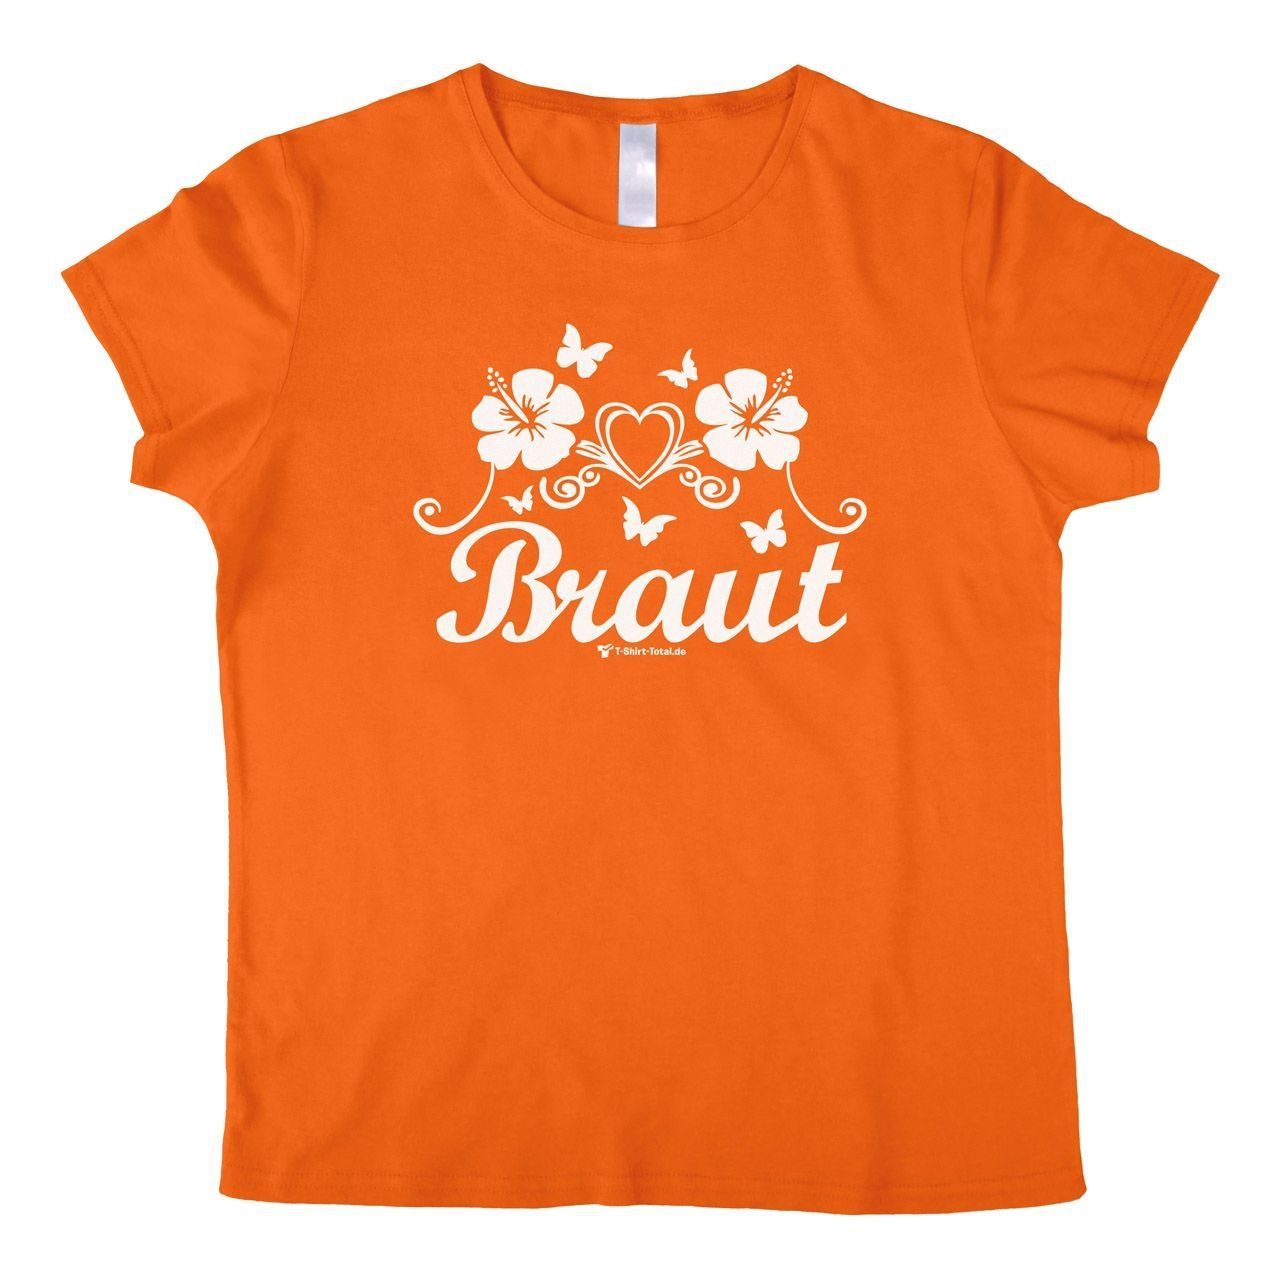 Die Braut Woman T-Shirt orange Extra Large